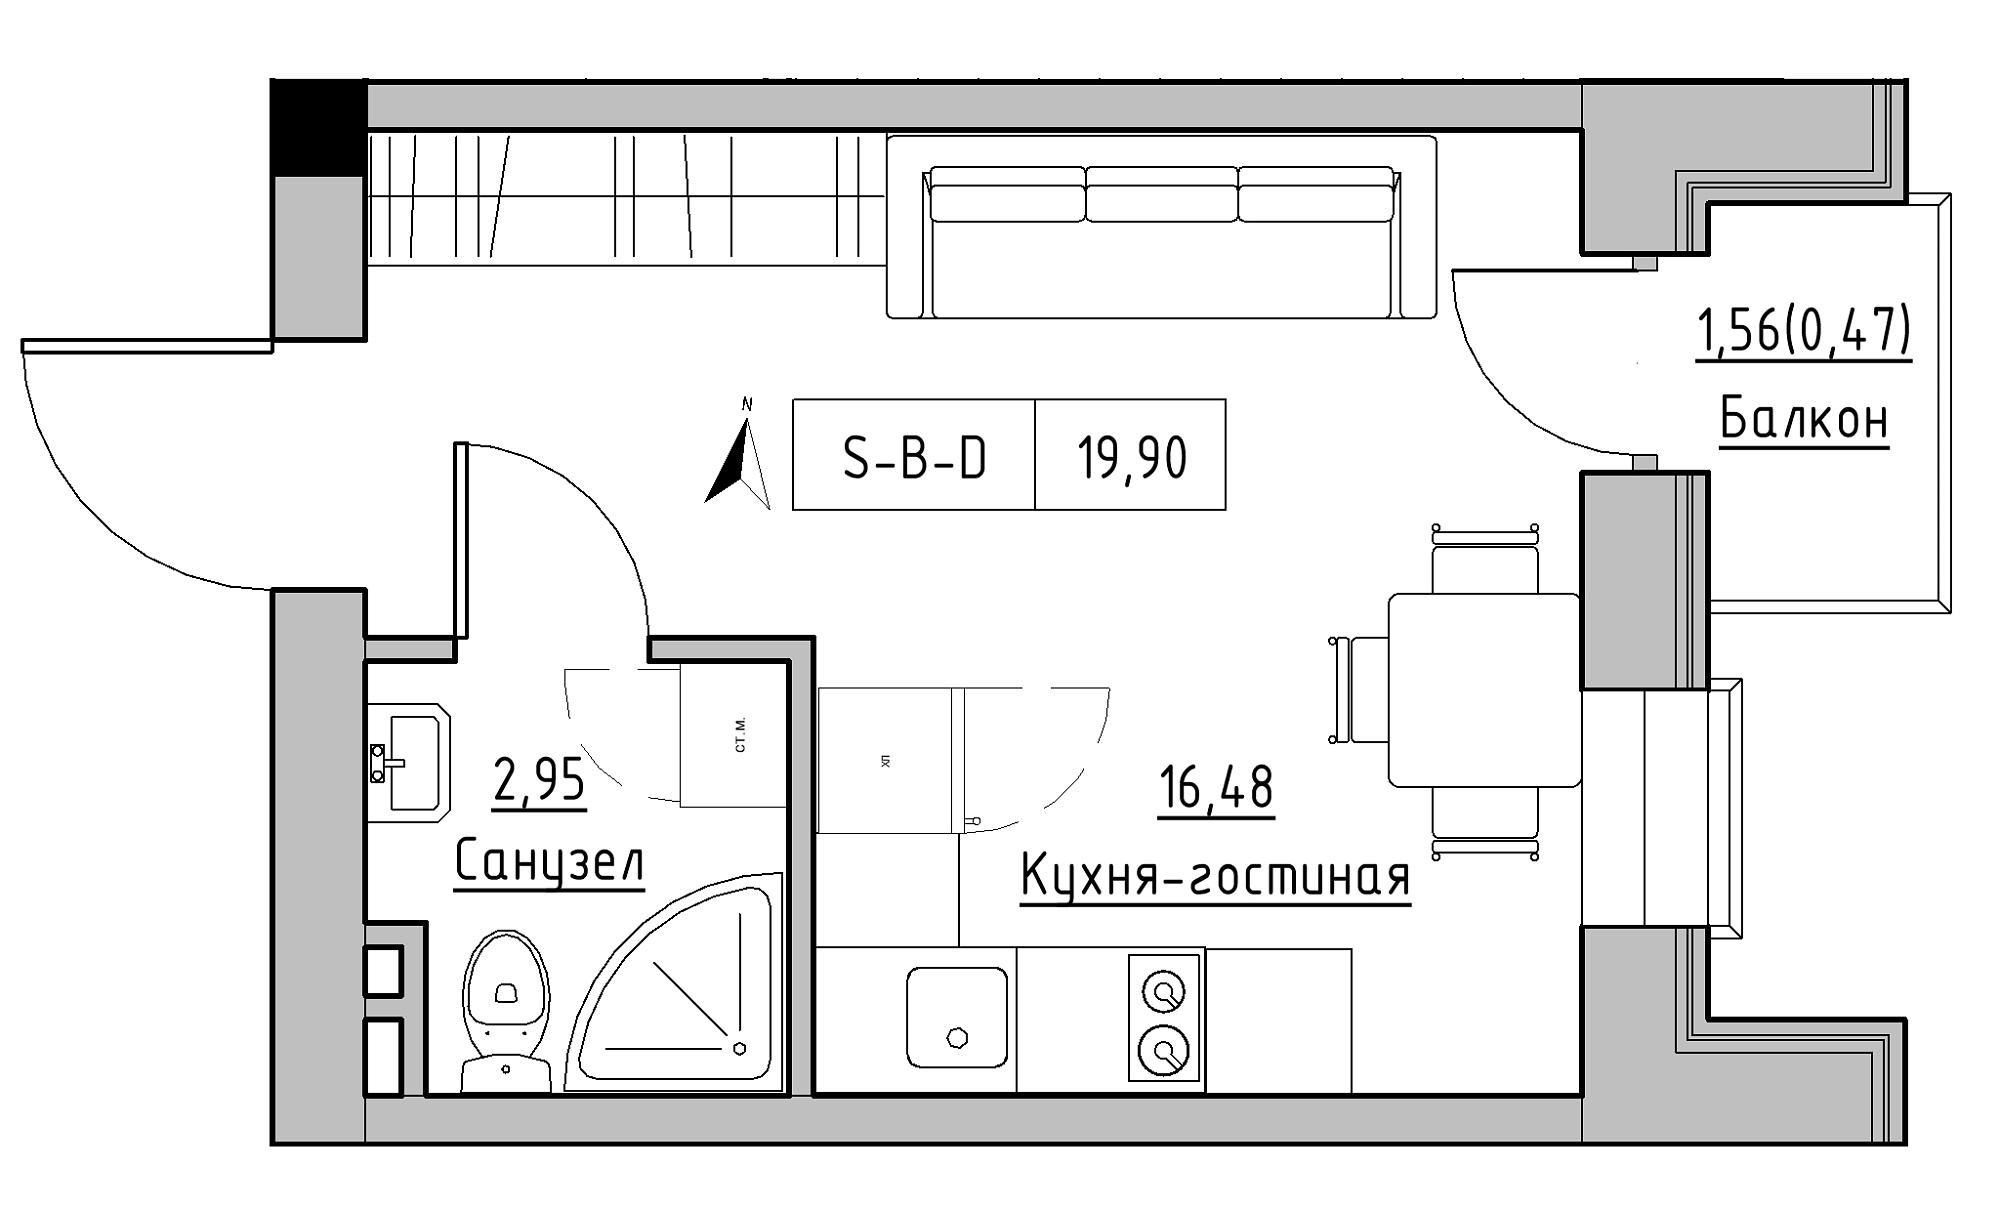 Планування Smart-квартира площею 19.9м2, KS-023-02/0006.